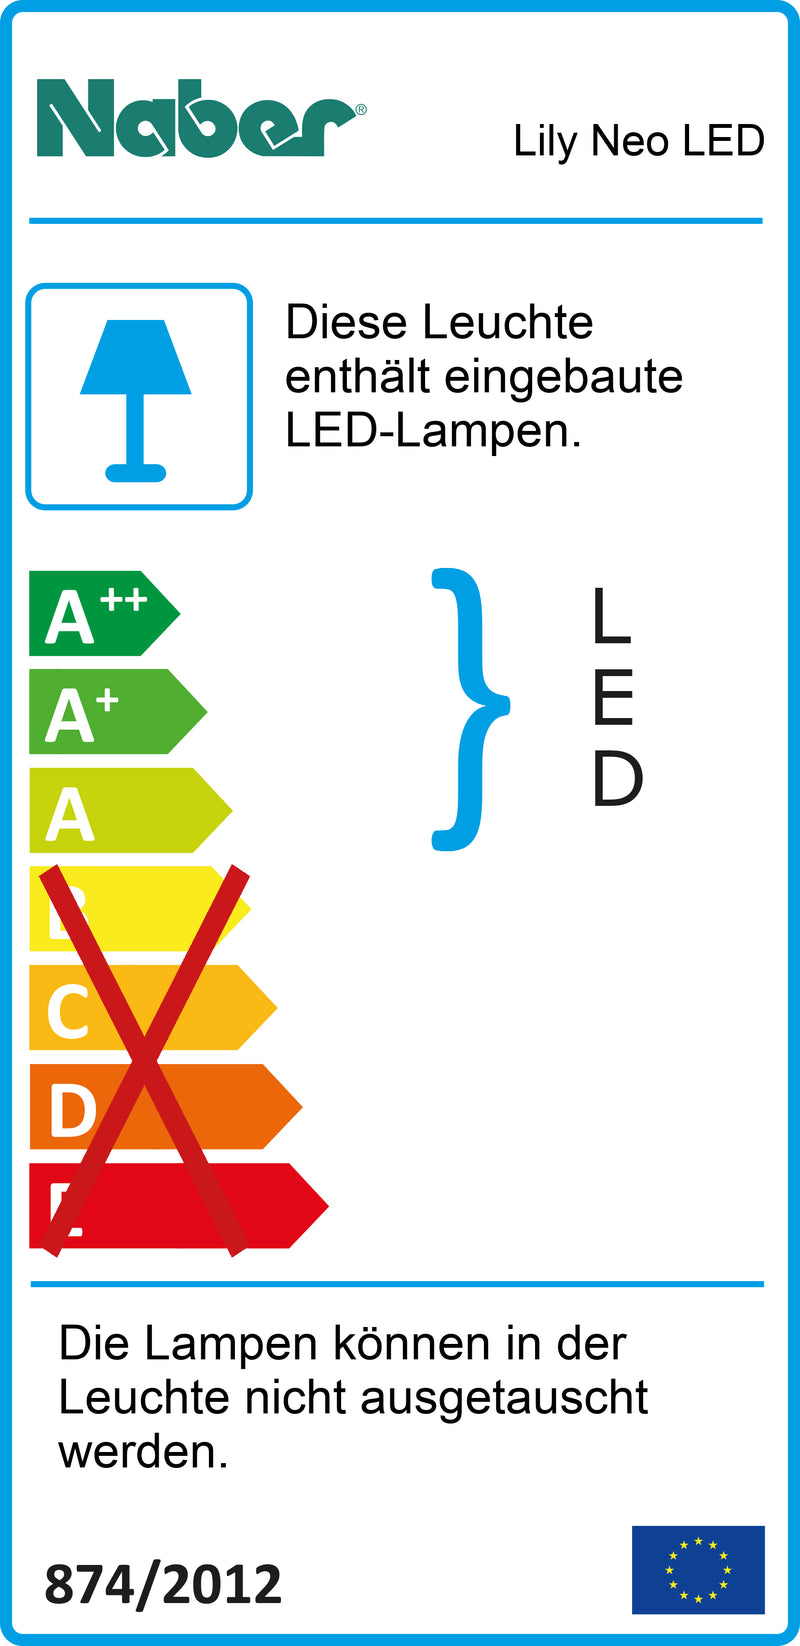 E-Label zu Zeichnung zu Lily Neo LED als Variante L 900 mm, 16 W, edelstahlfarbig von Naber GmbH in der Kategorie Lichttechnik in Österreich auf conceptshop.at